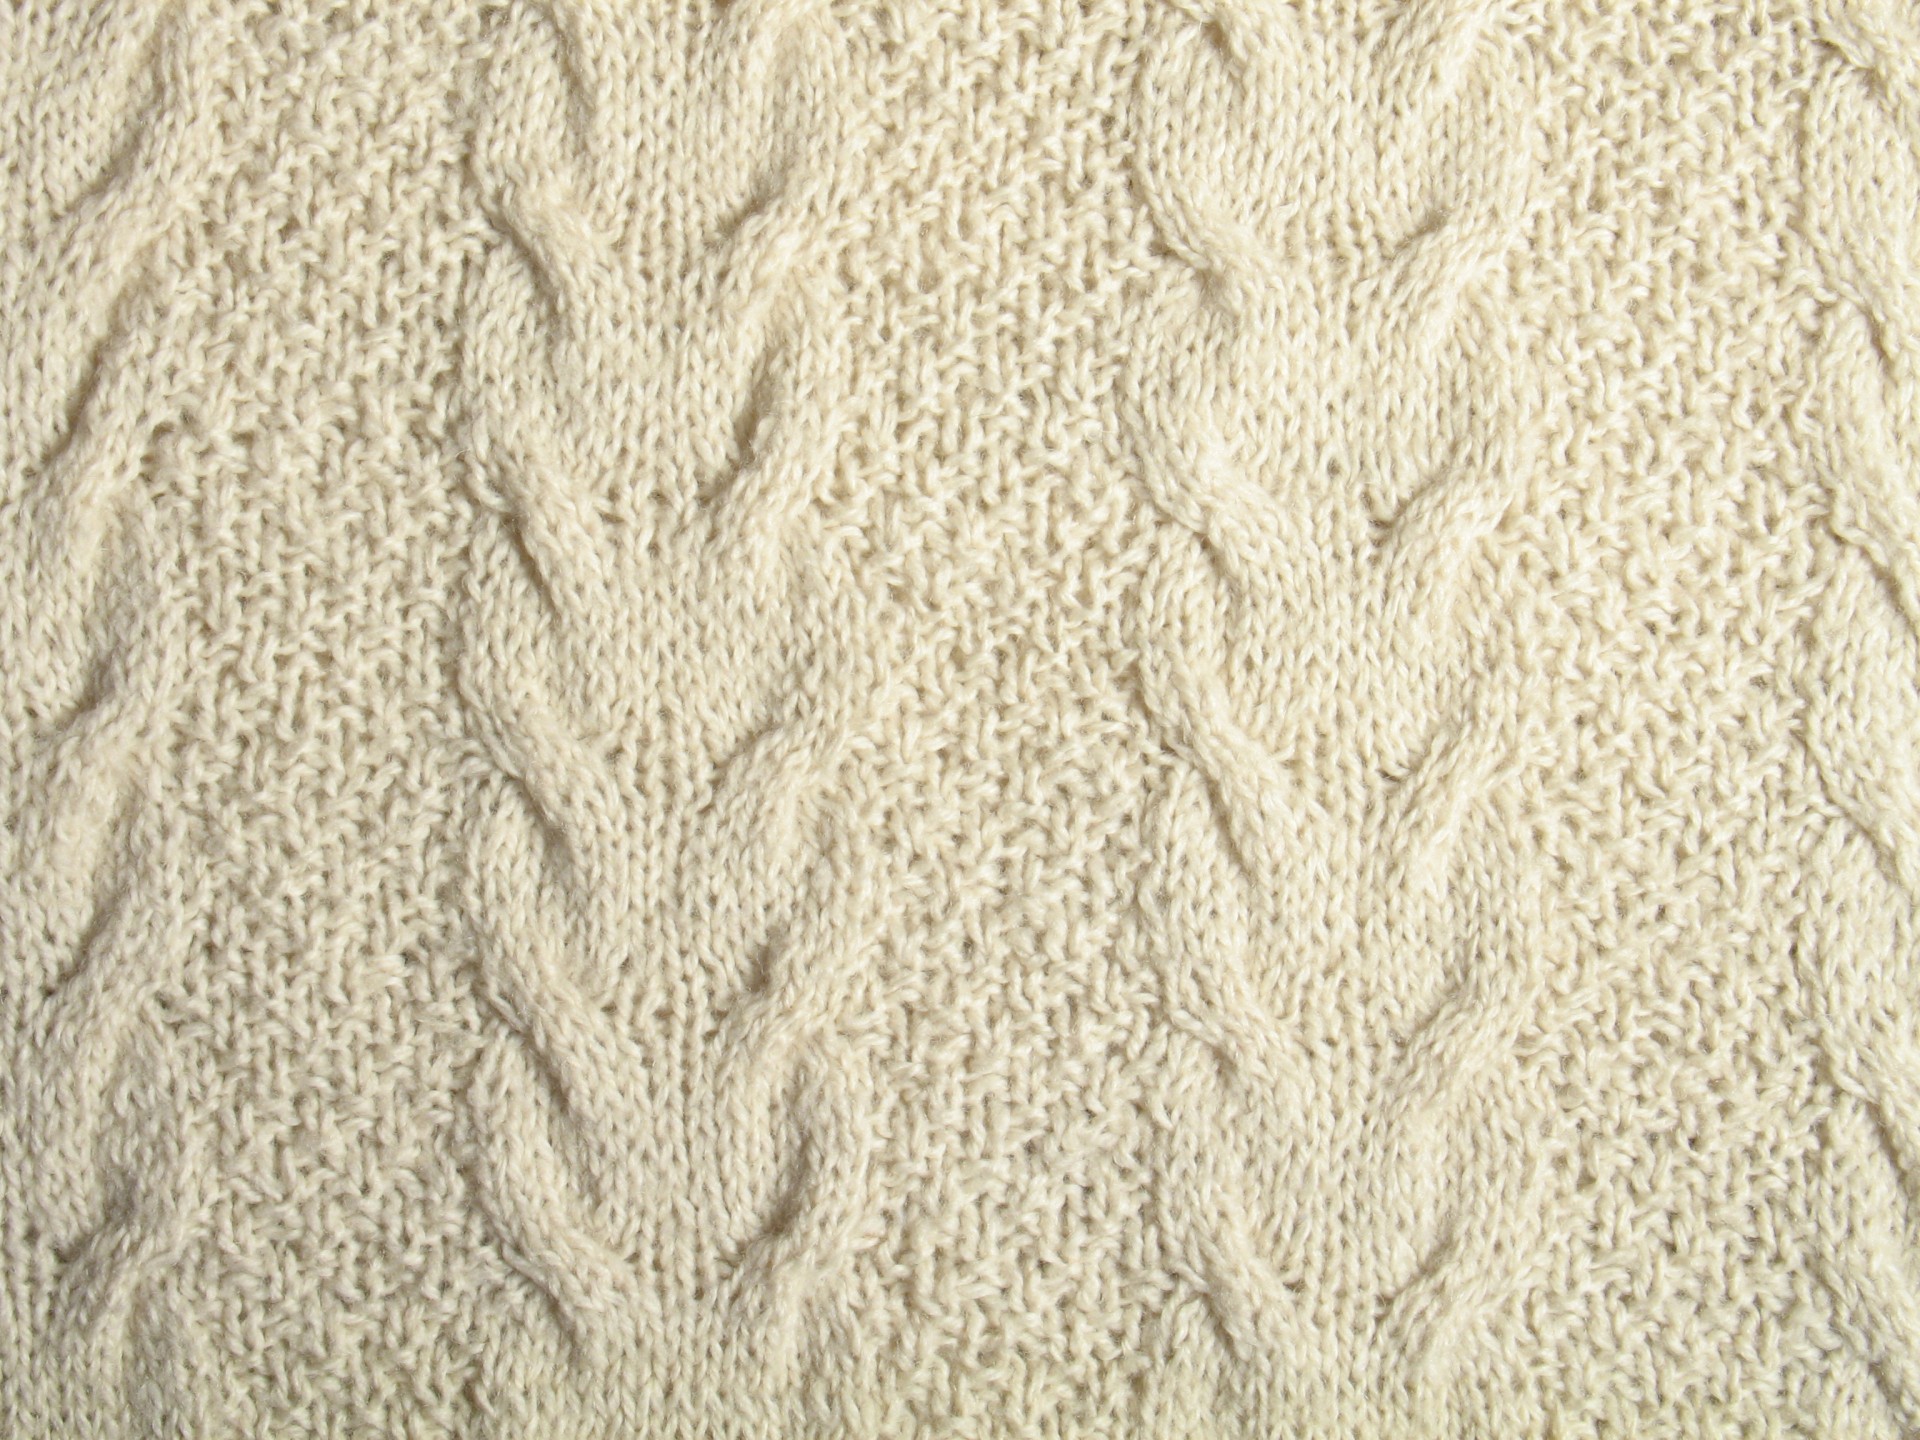 White wool aran knitting pattern